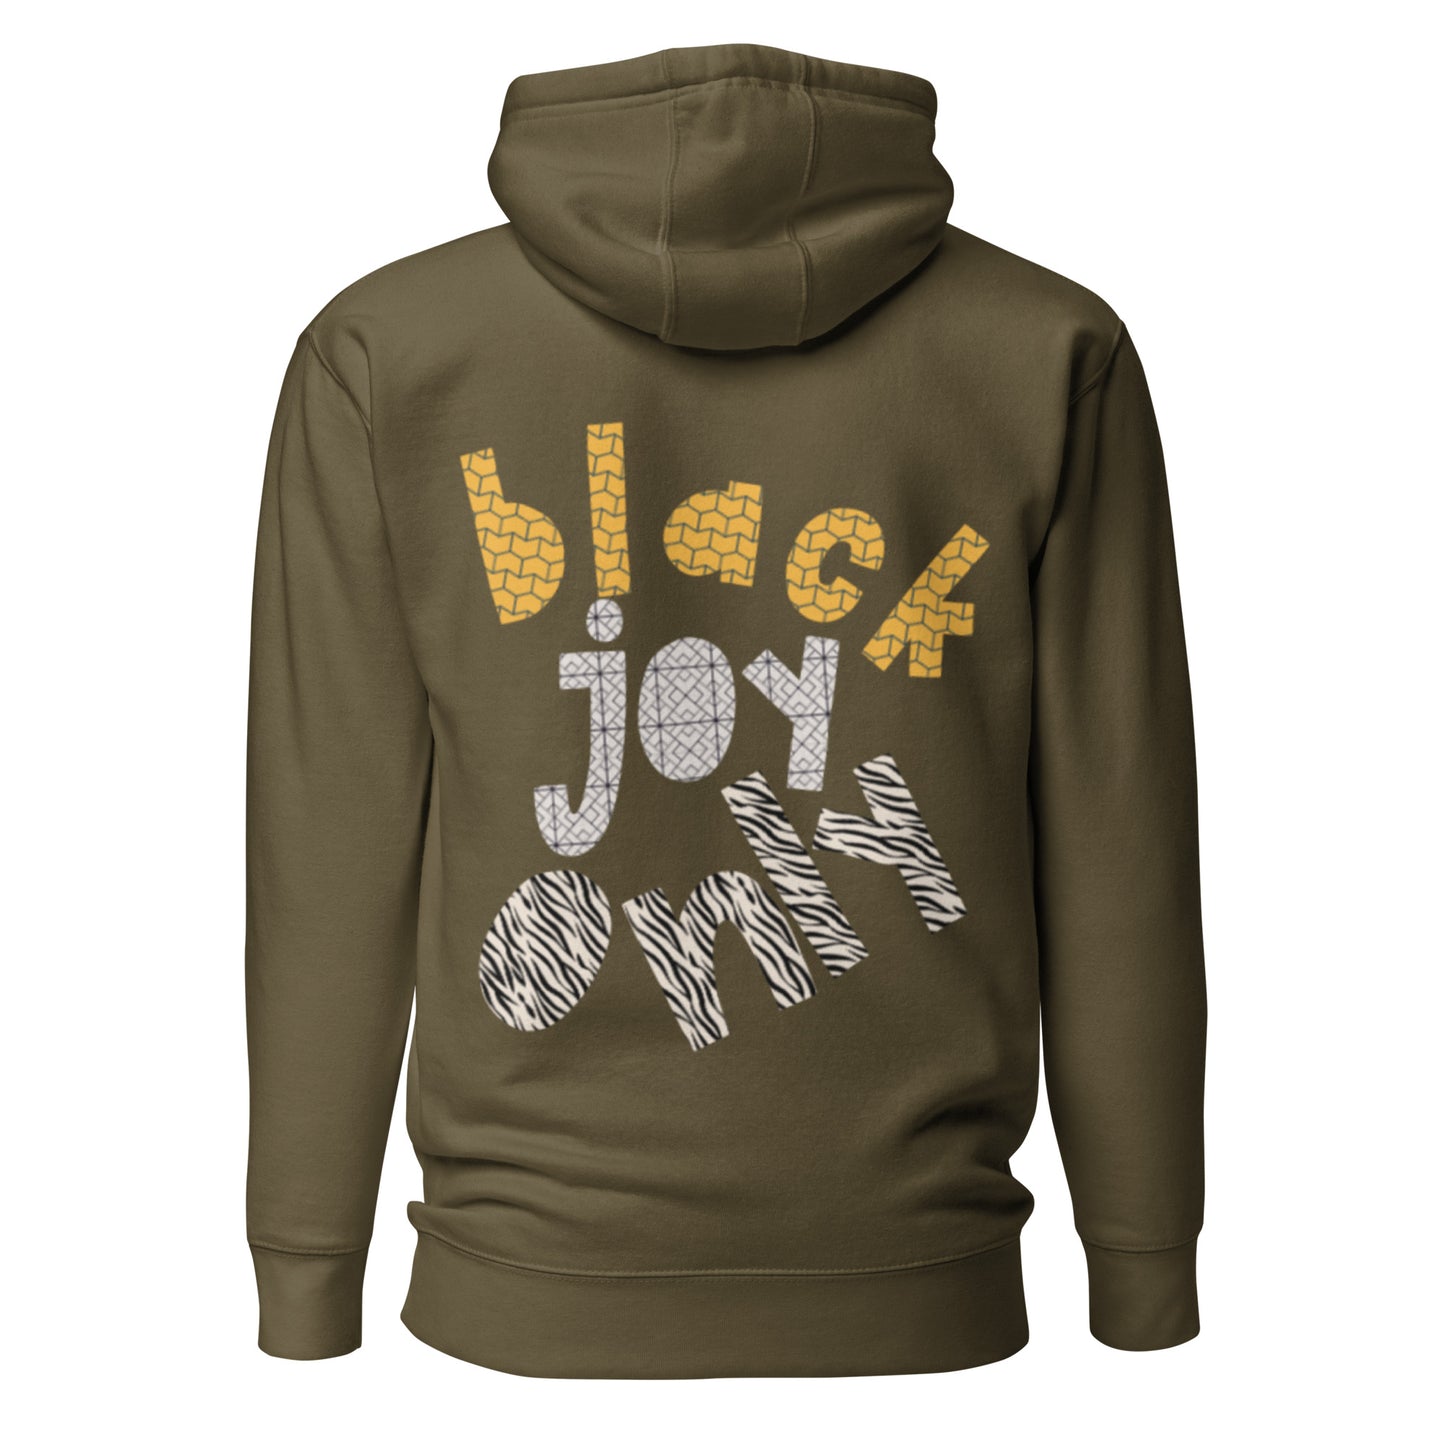 Black Joy in the Bay [Serves as Deposit*]